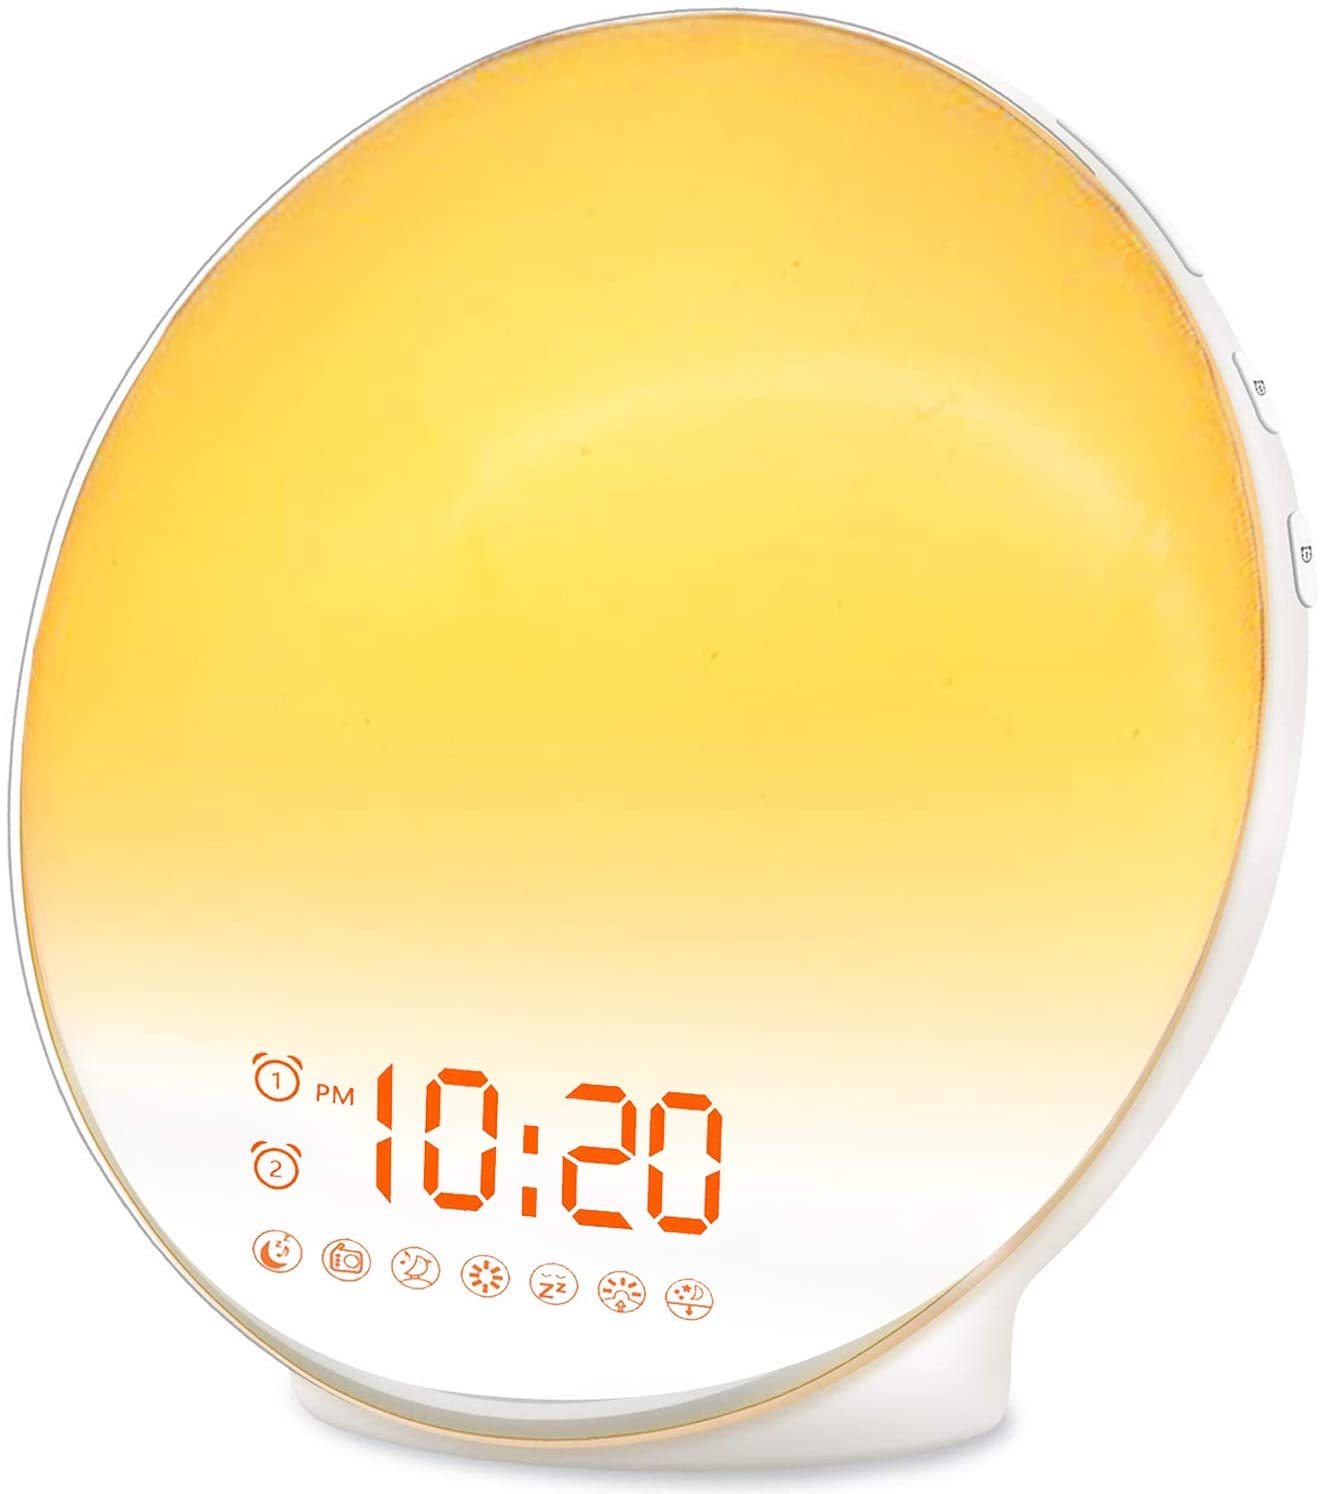 Sunrise Alarm Clock